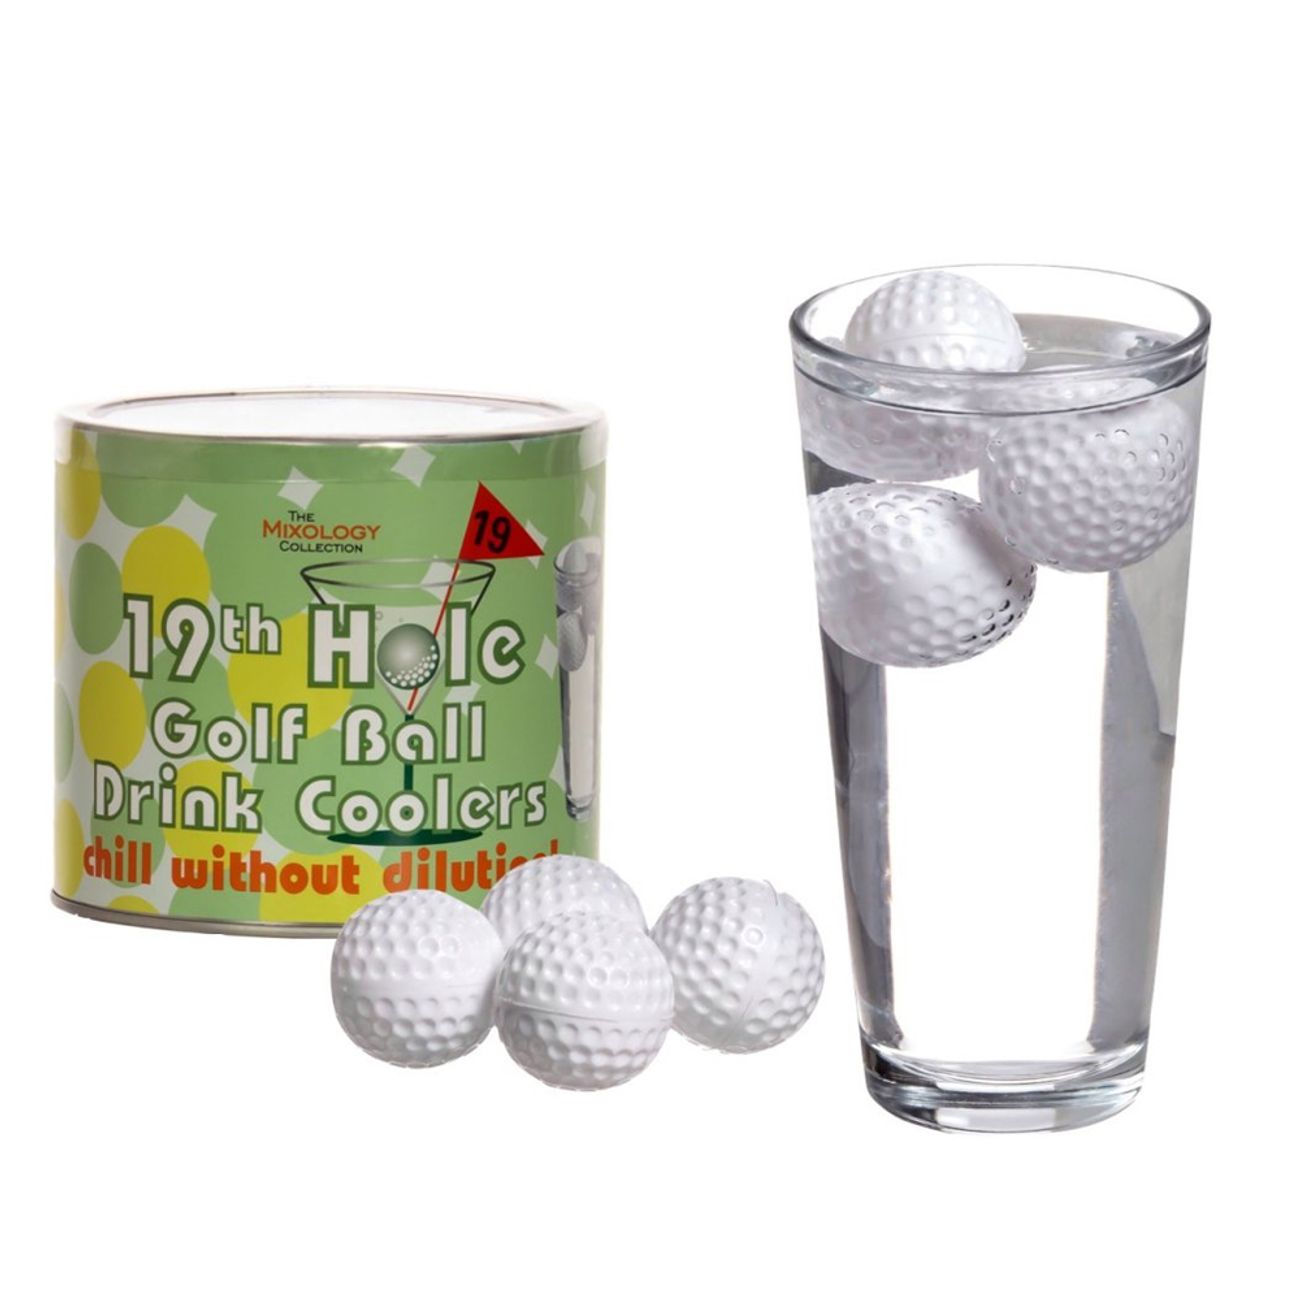 dryckeskylare-golfbollar-1